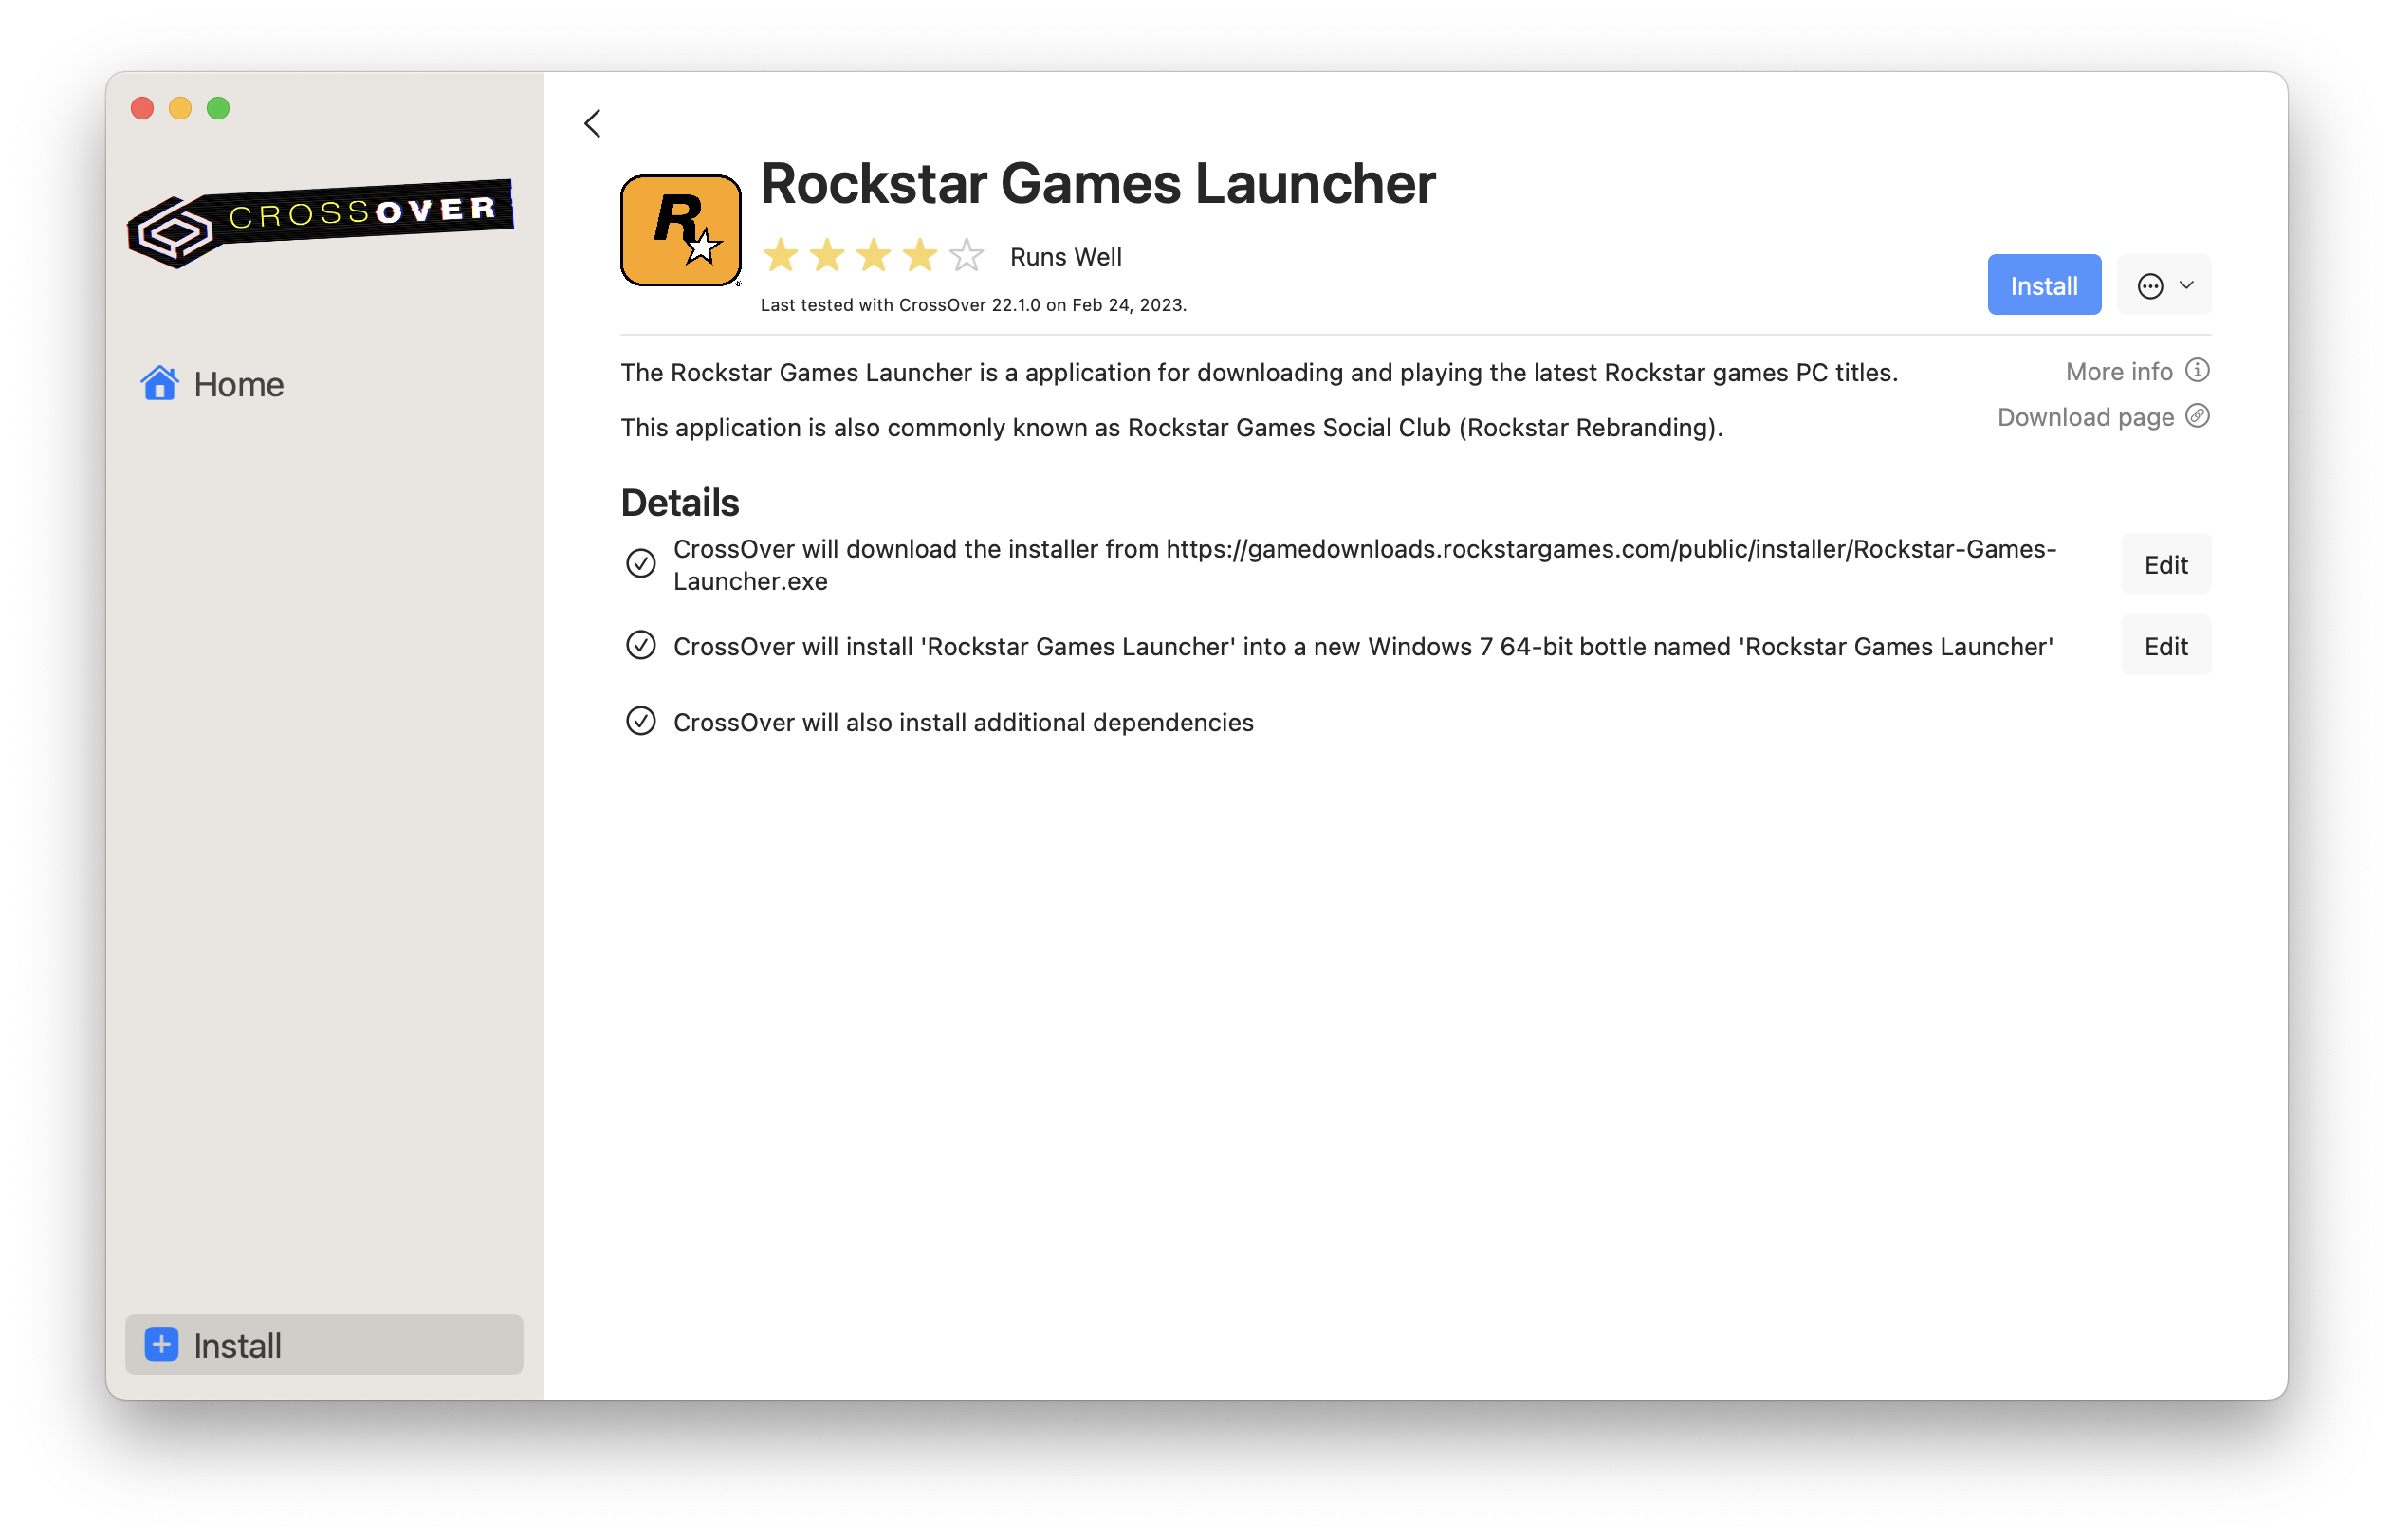 installer/Rockstar-Games-Launcher